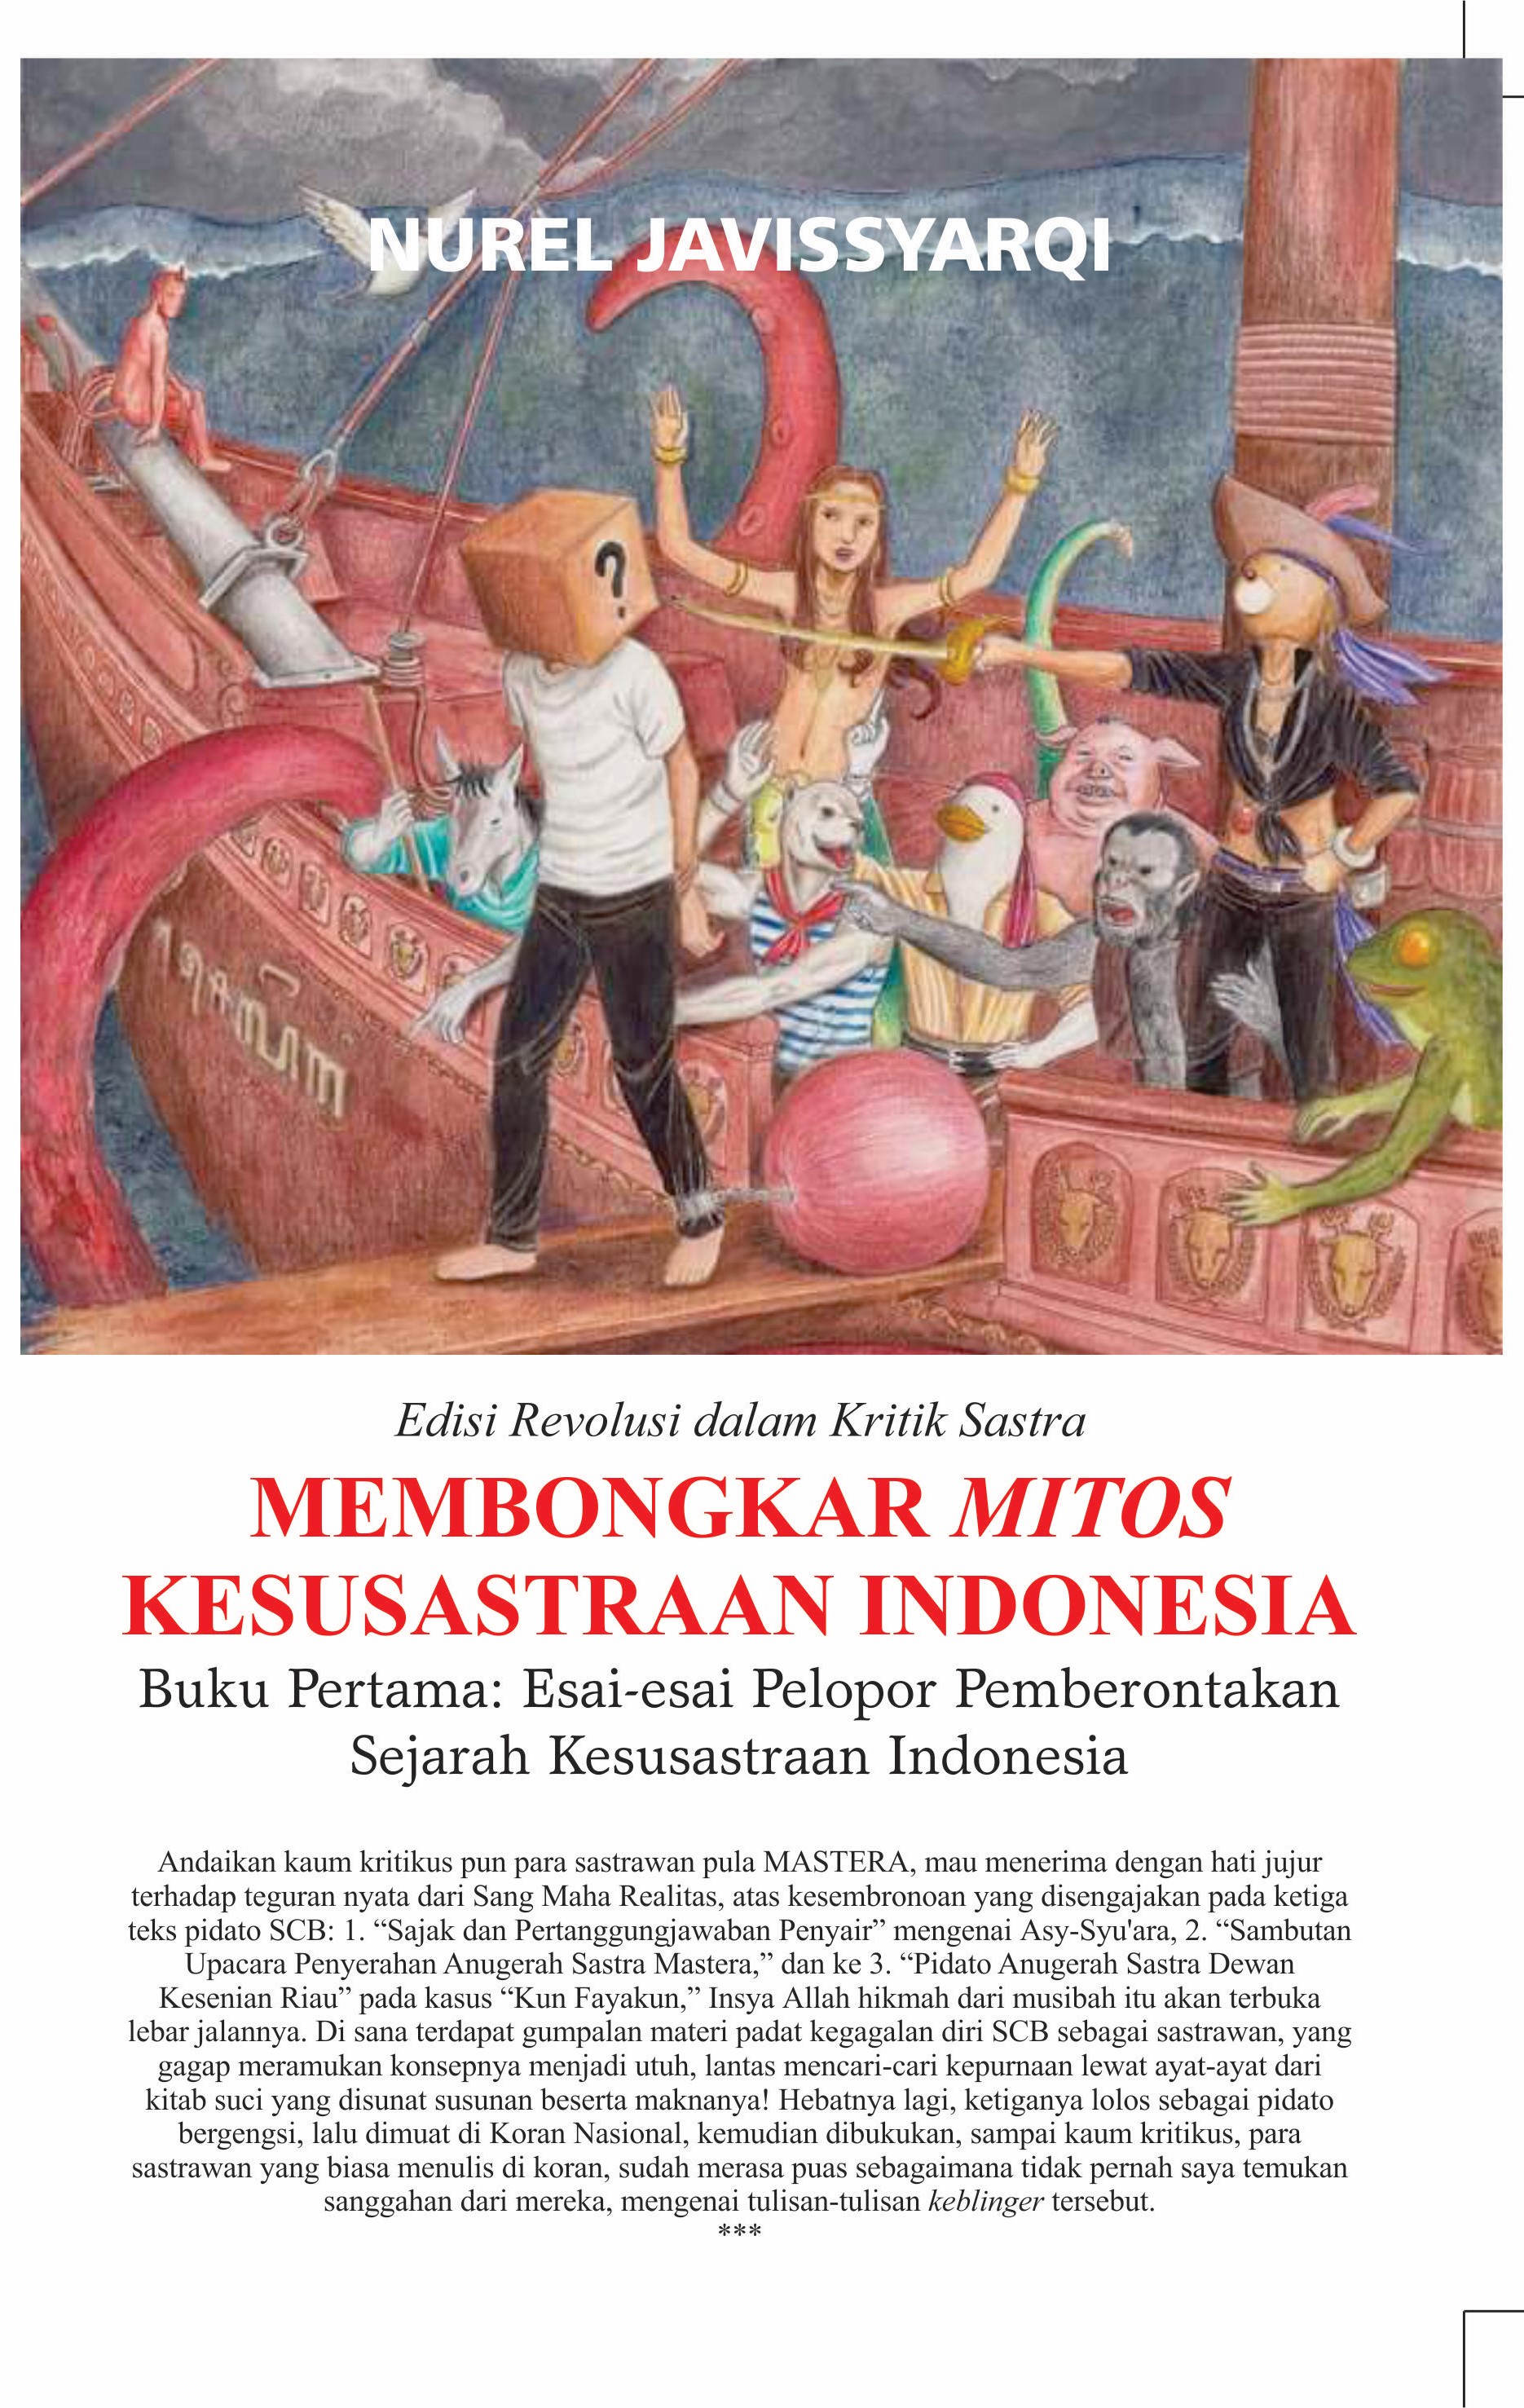 Membongkar mitos kesusastraan Indonesia buku pertama :  esai-esai pelopor pemberontakan sejarah kesustraan Indonesia